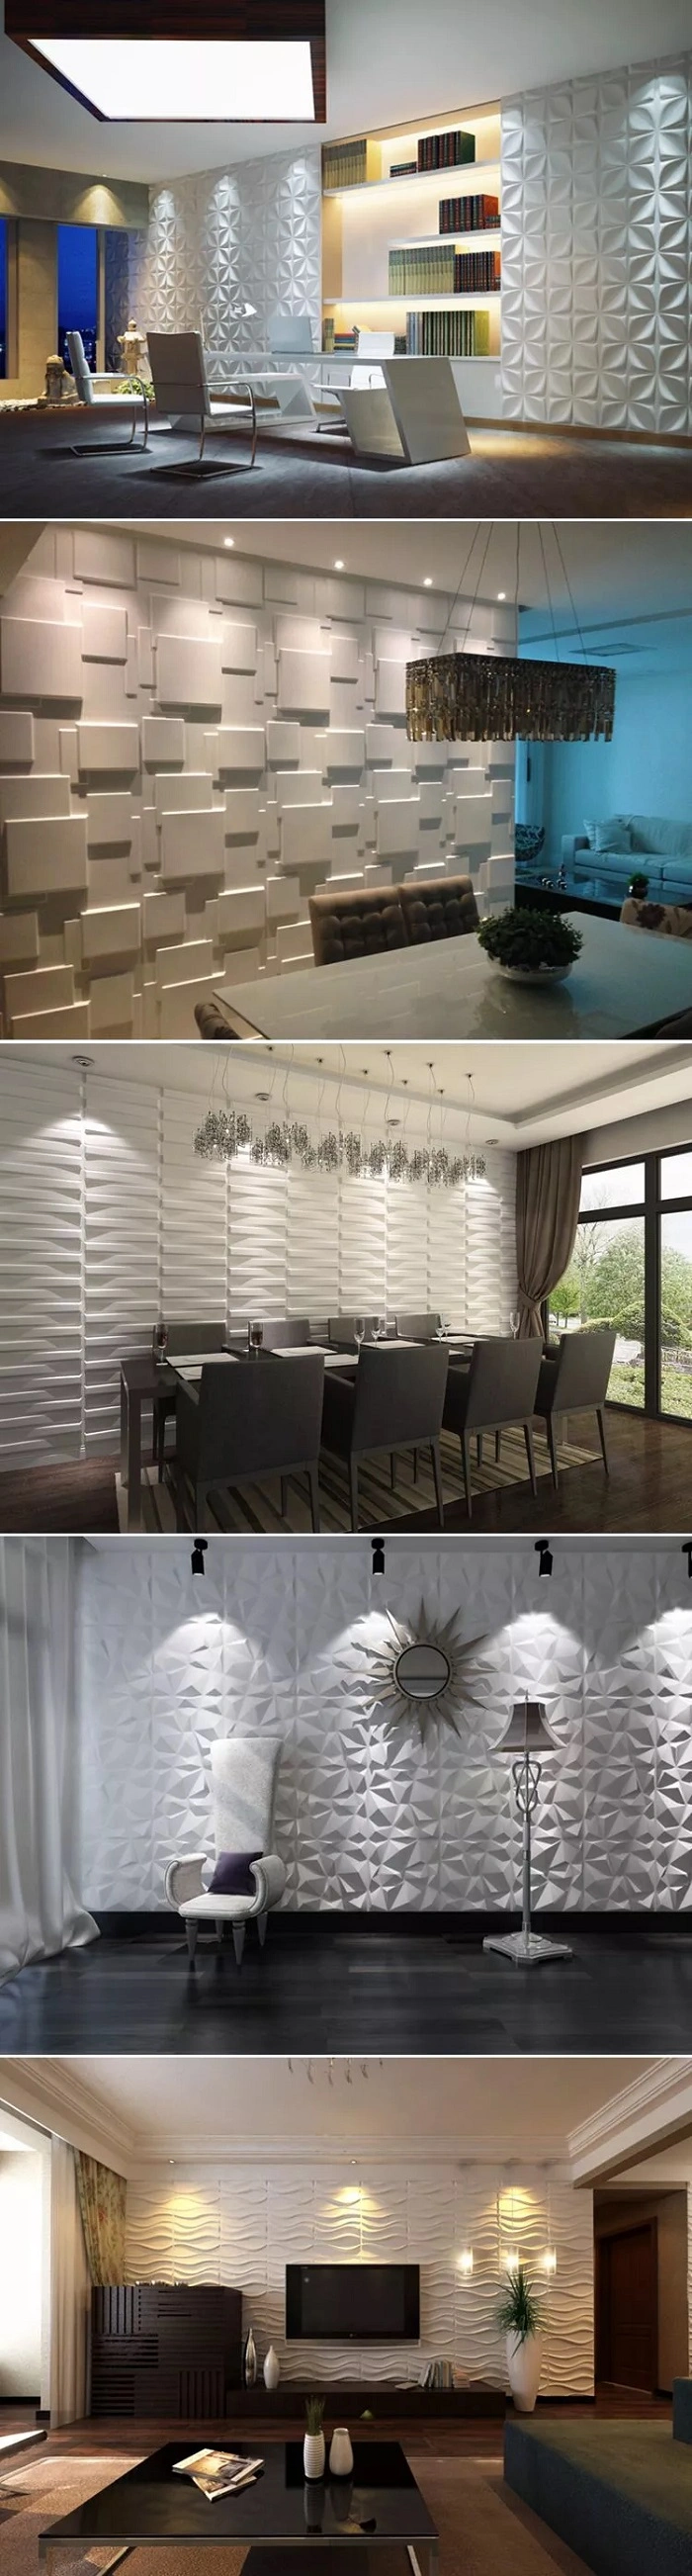 Zhejaing Modern Wall Art Decor 3D Wall Covering Panels for House Interior